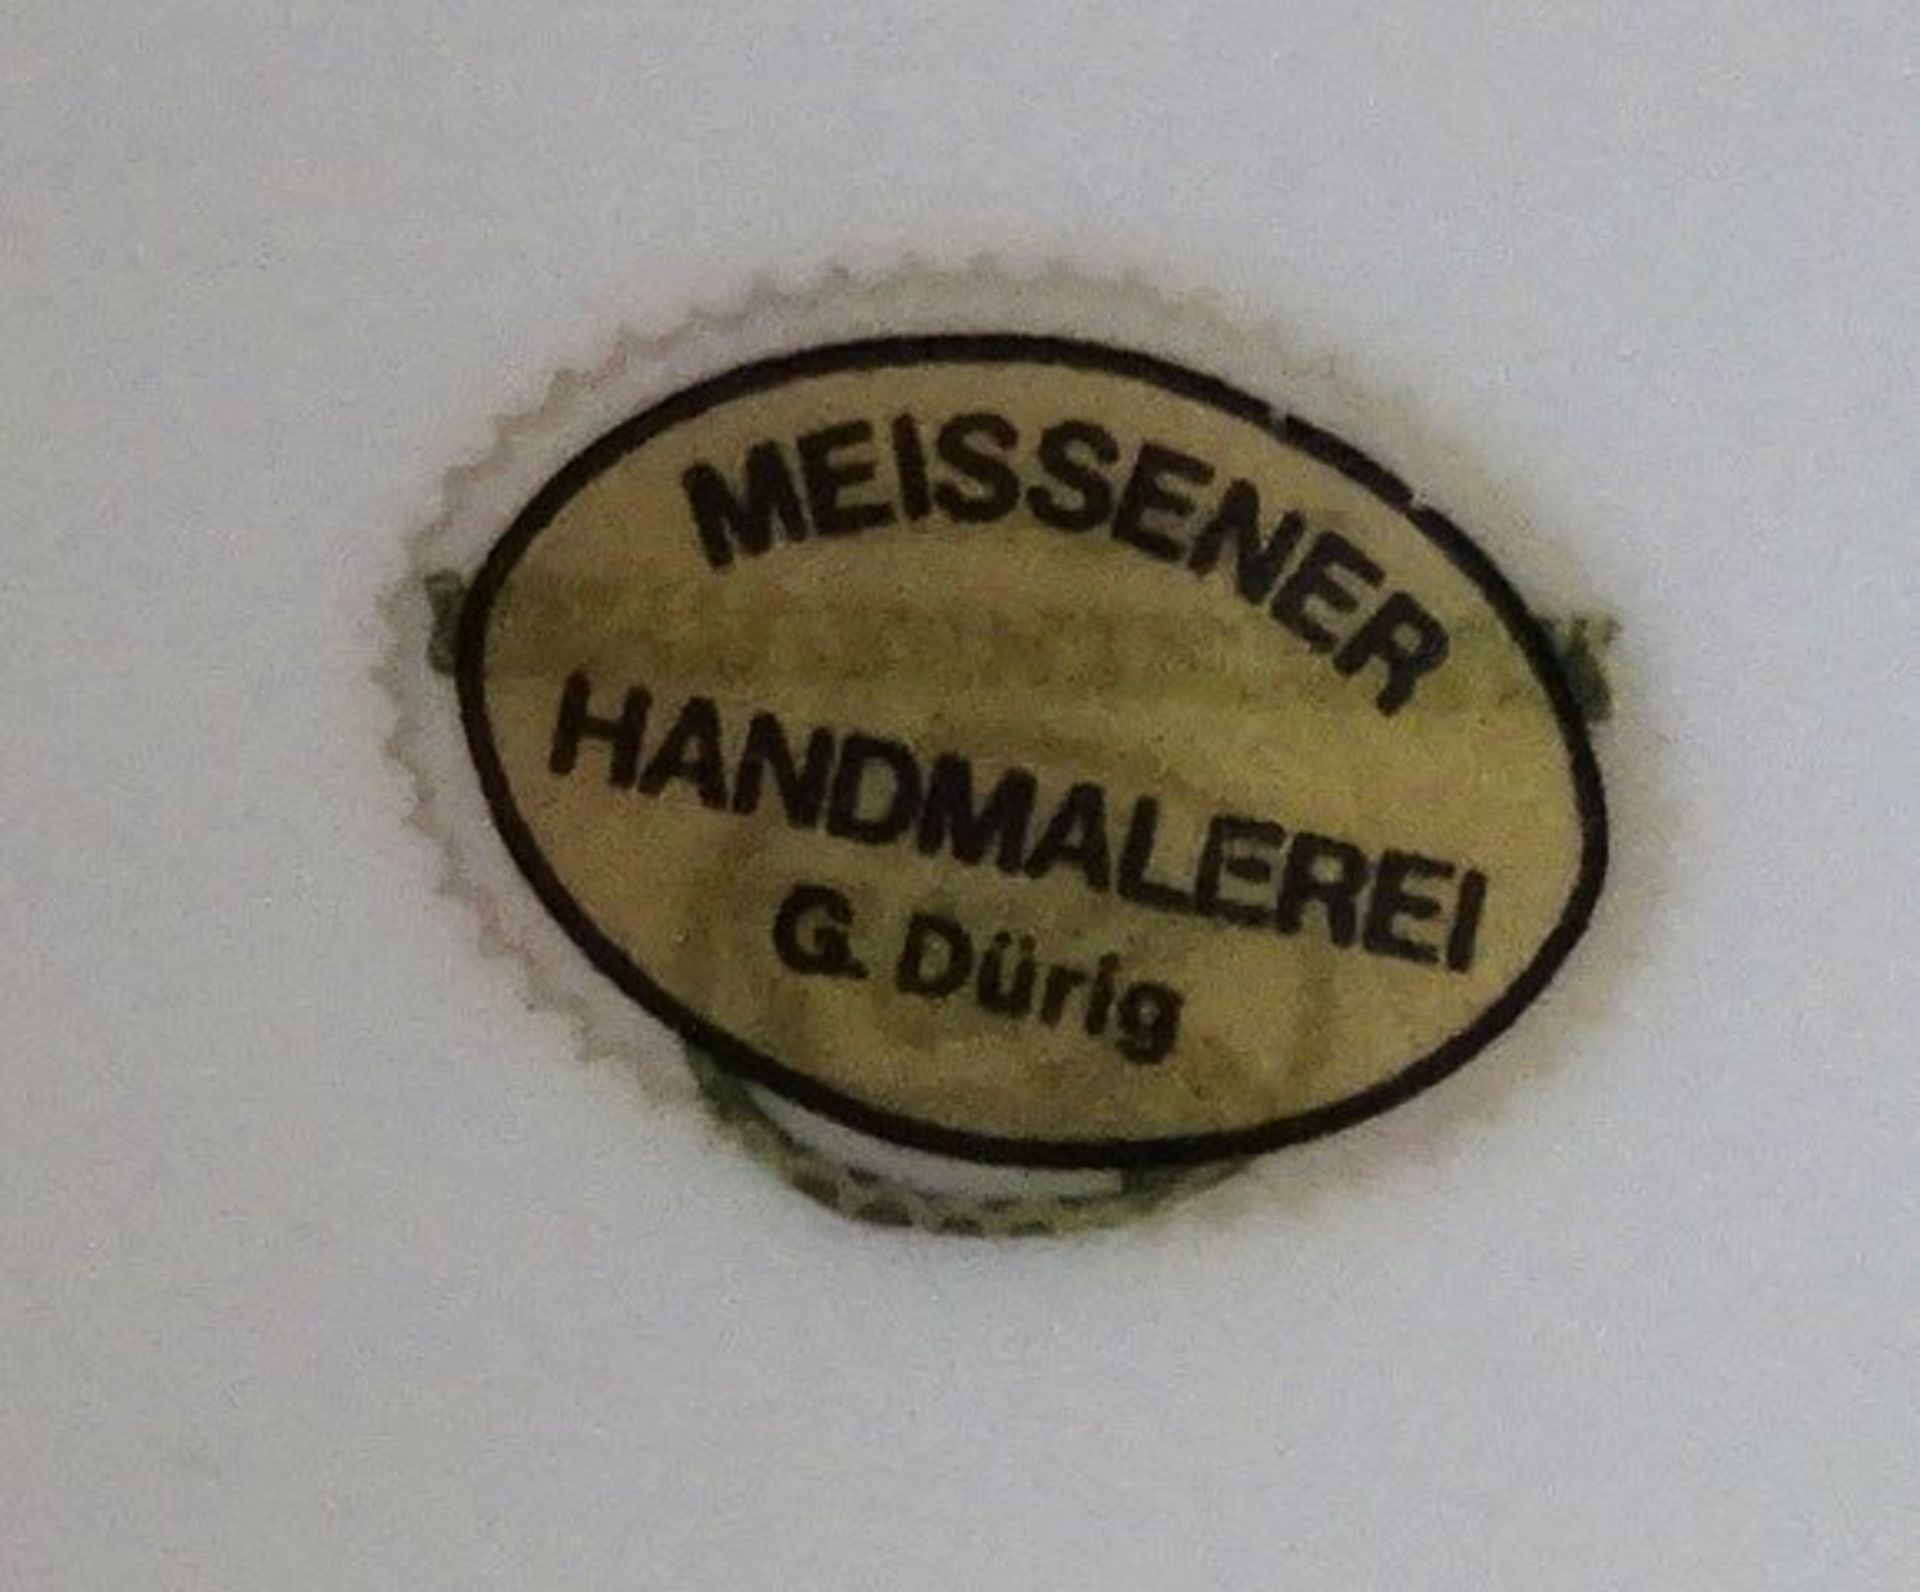 50 tg. Speiseservice, Meissener Handmalerei von G. Dürig, auf Hutschenreuther Weissporzellan,Form N - Bild 7 aus 8